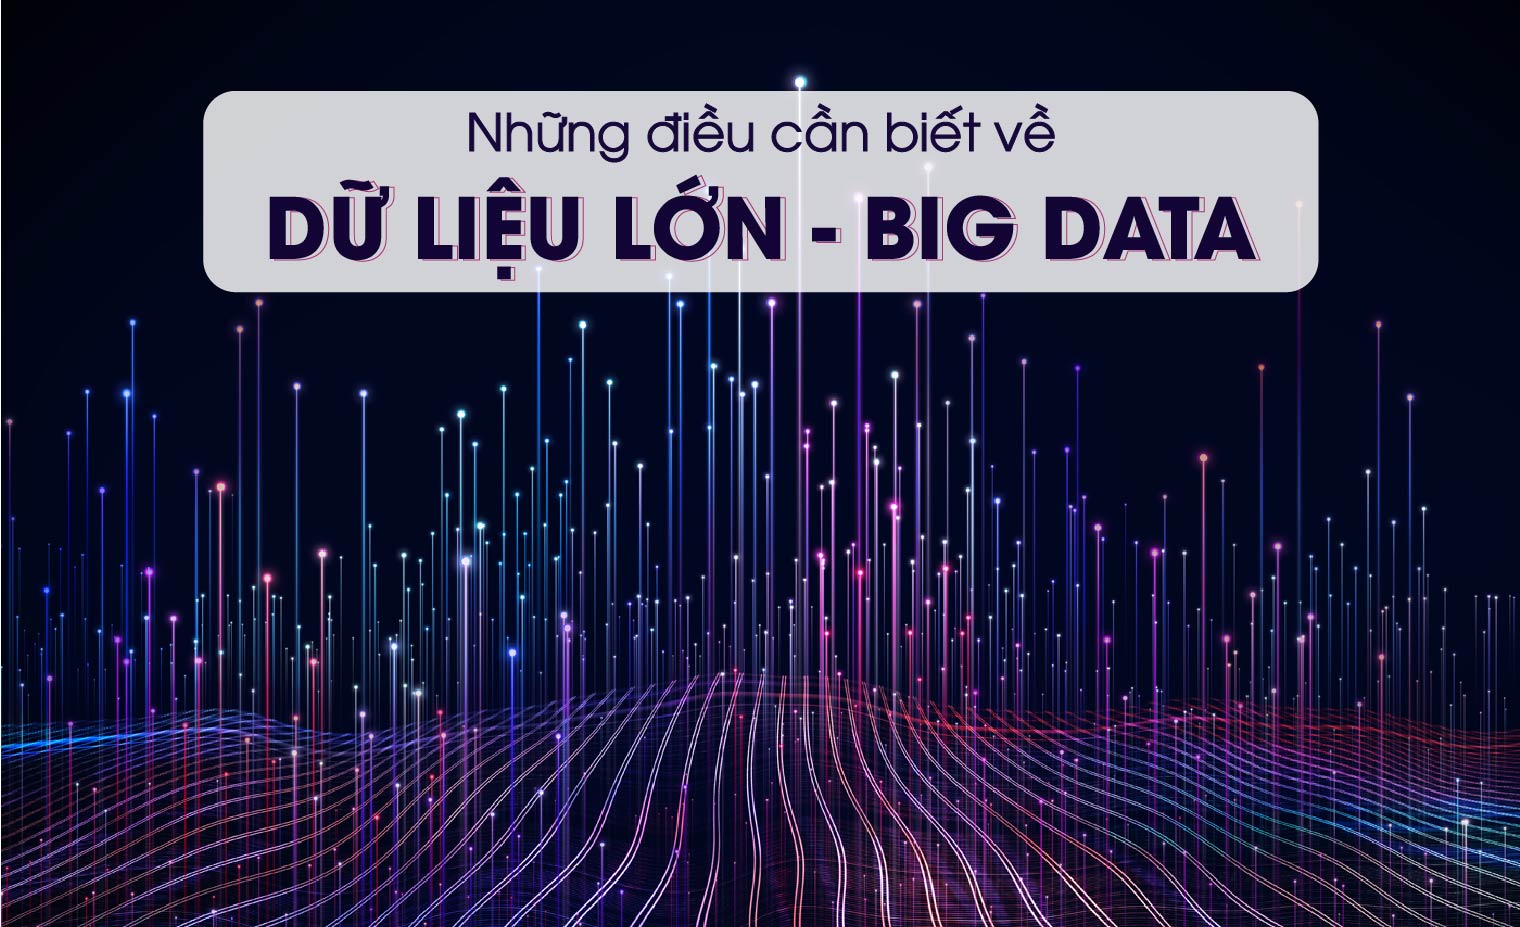 Big Data là gì? Lợi ích và ứng dụng quan trọng của Dữ liệu lớn